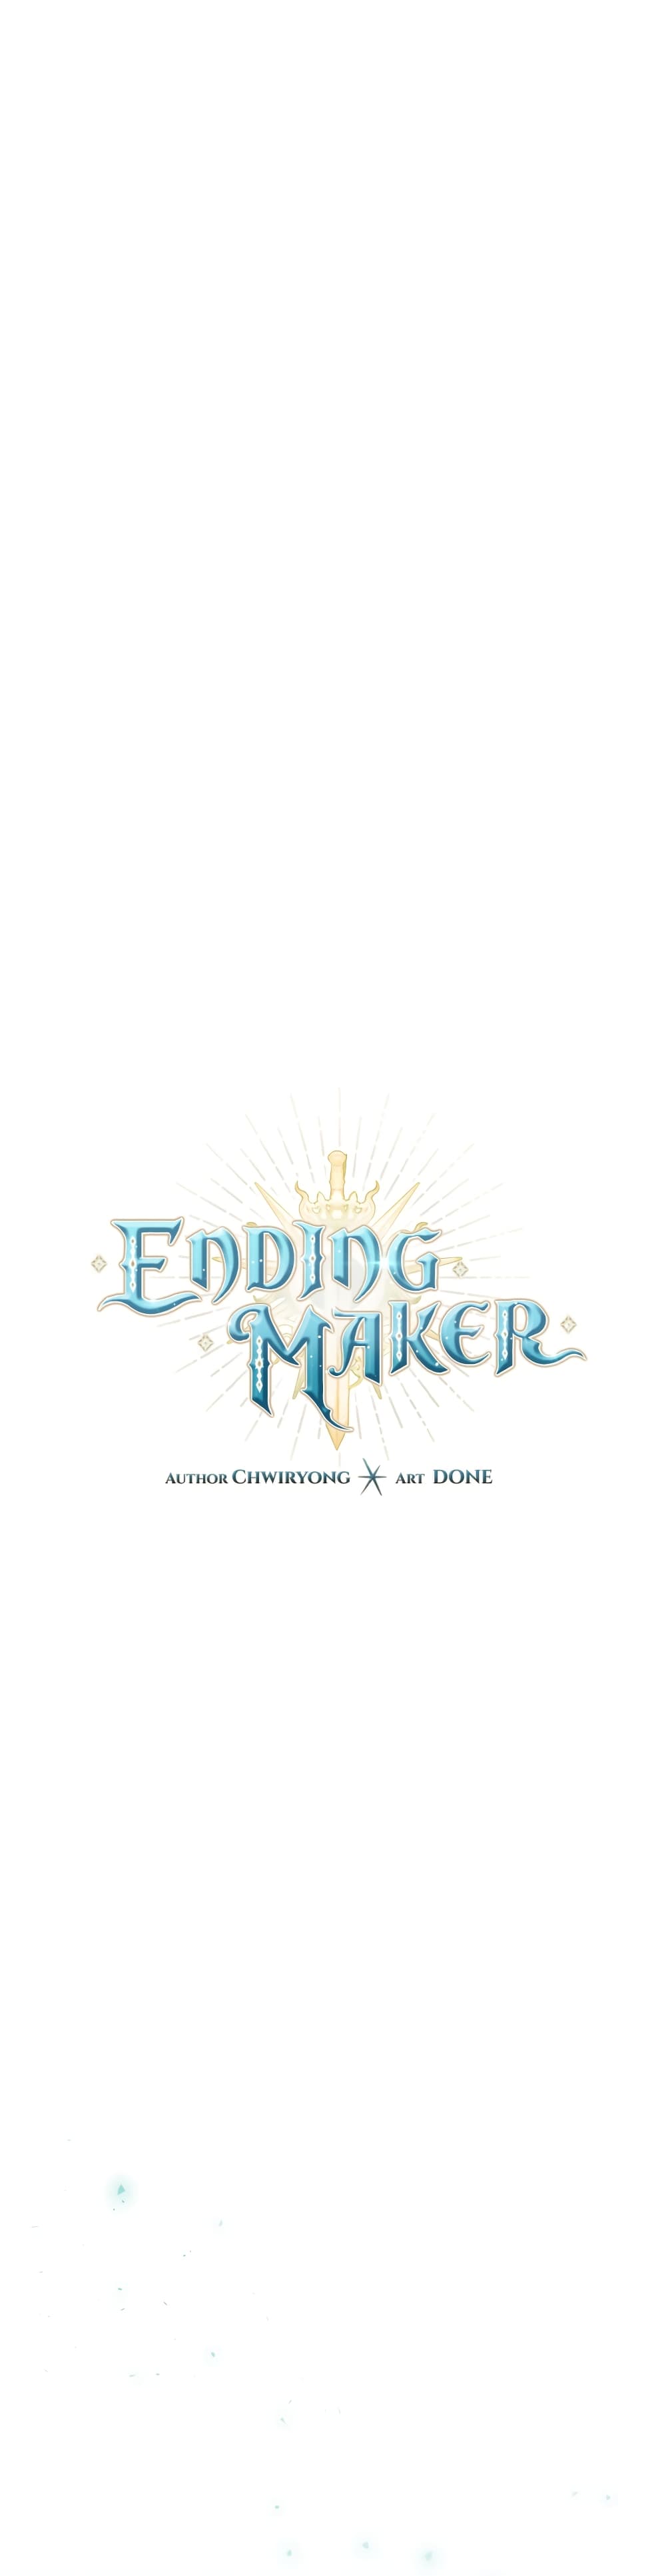 Ending Maker 22 05